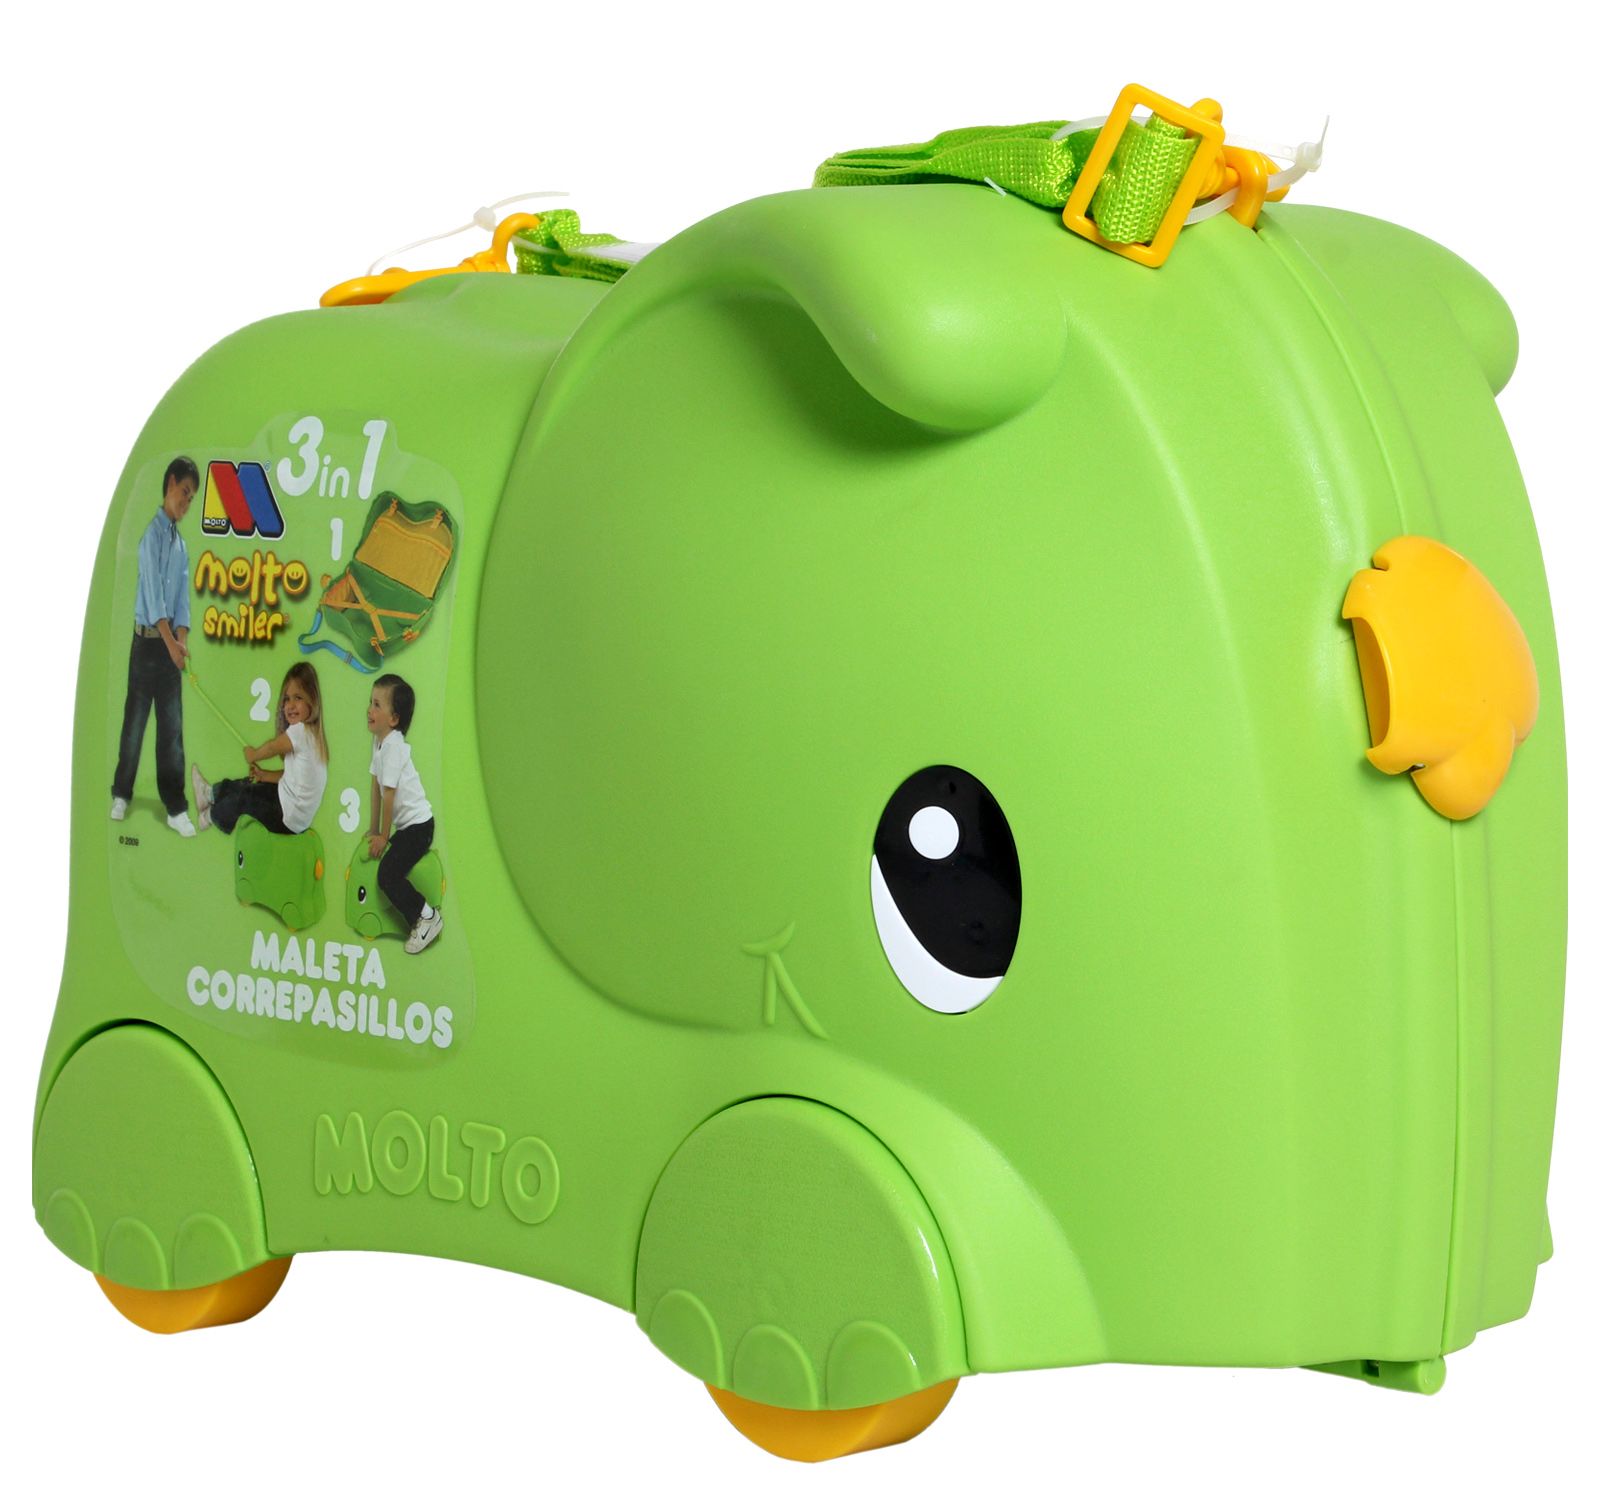 Molto - Smiler Elephant Green